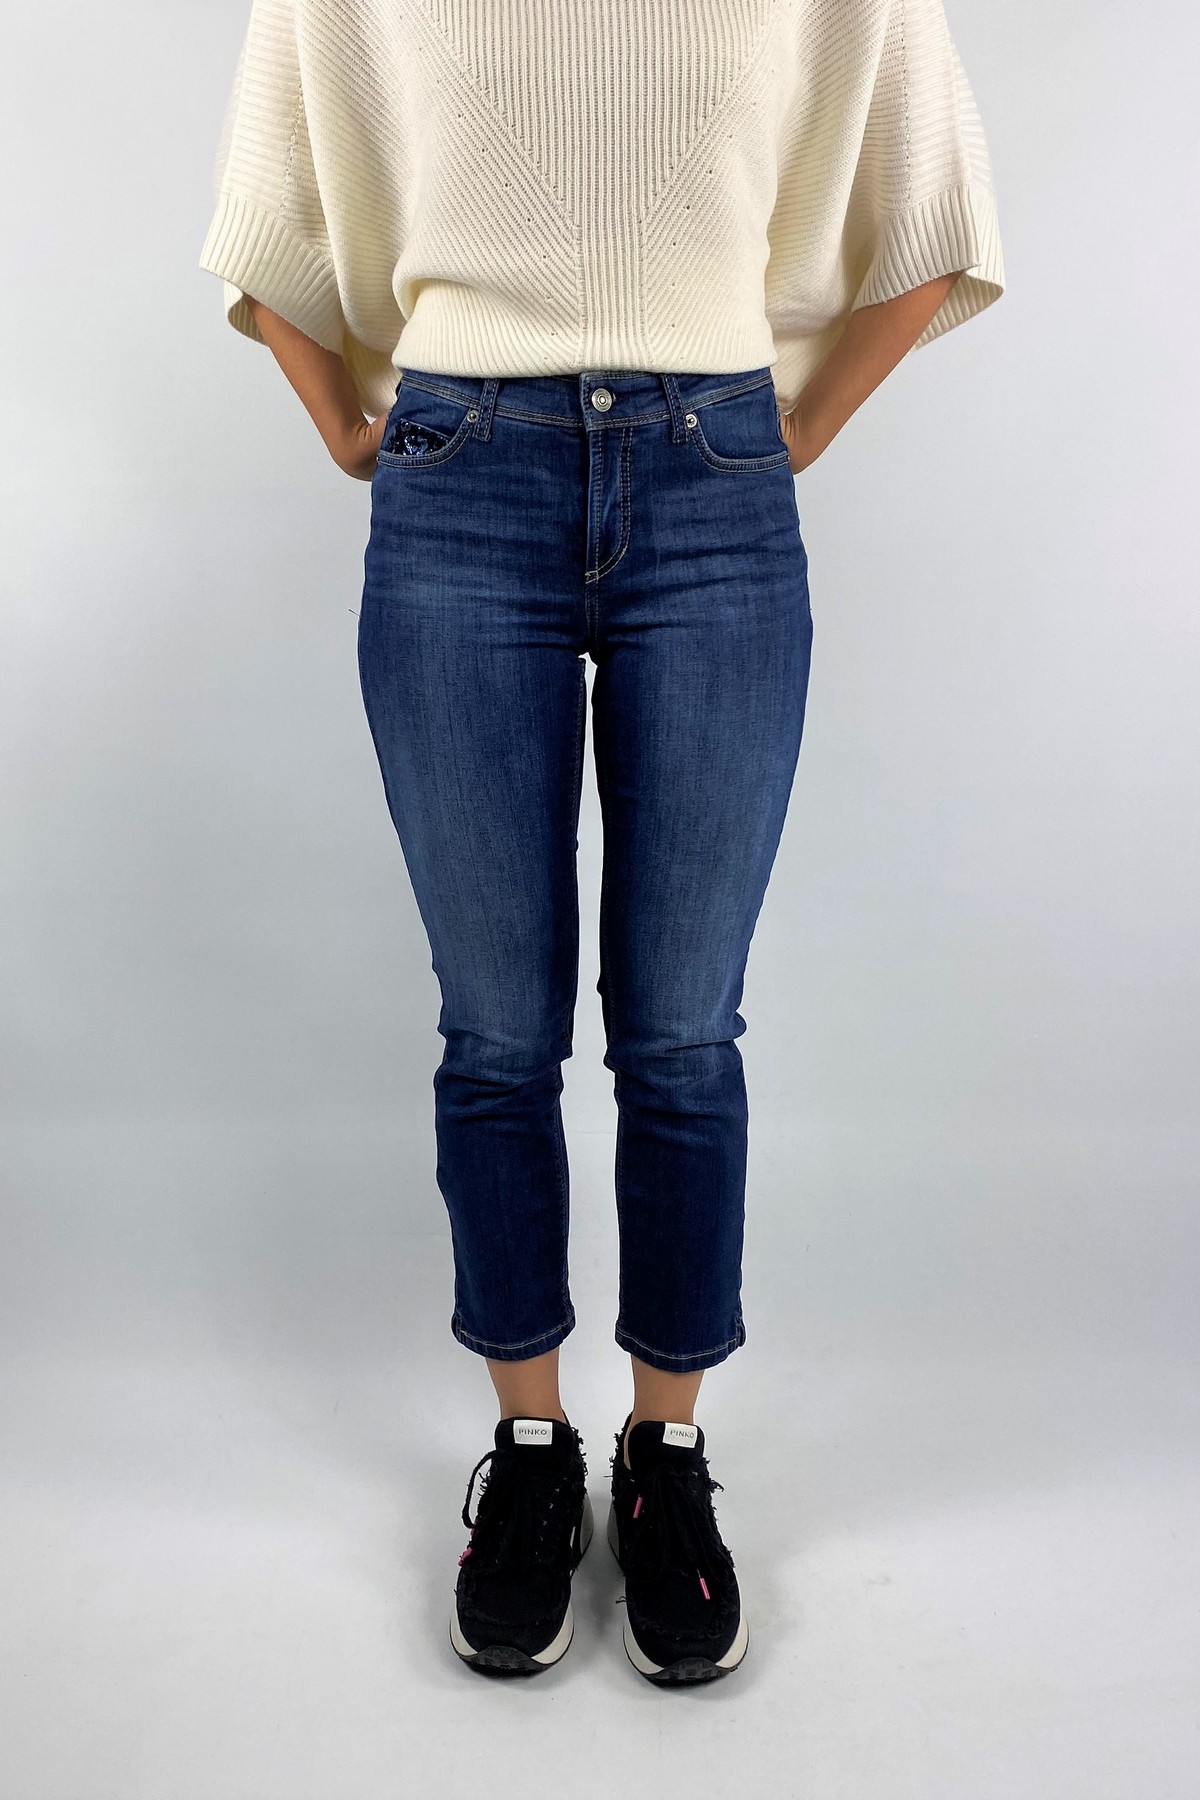 Jeans feminine superstretch in de kleur blauw van het merk Cambio